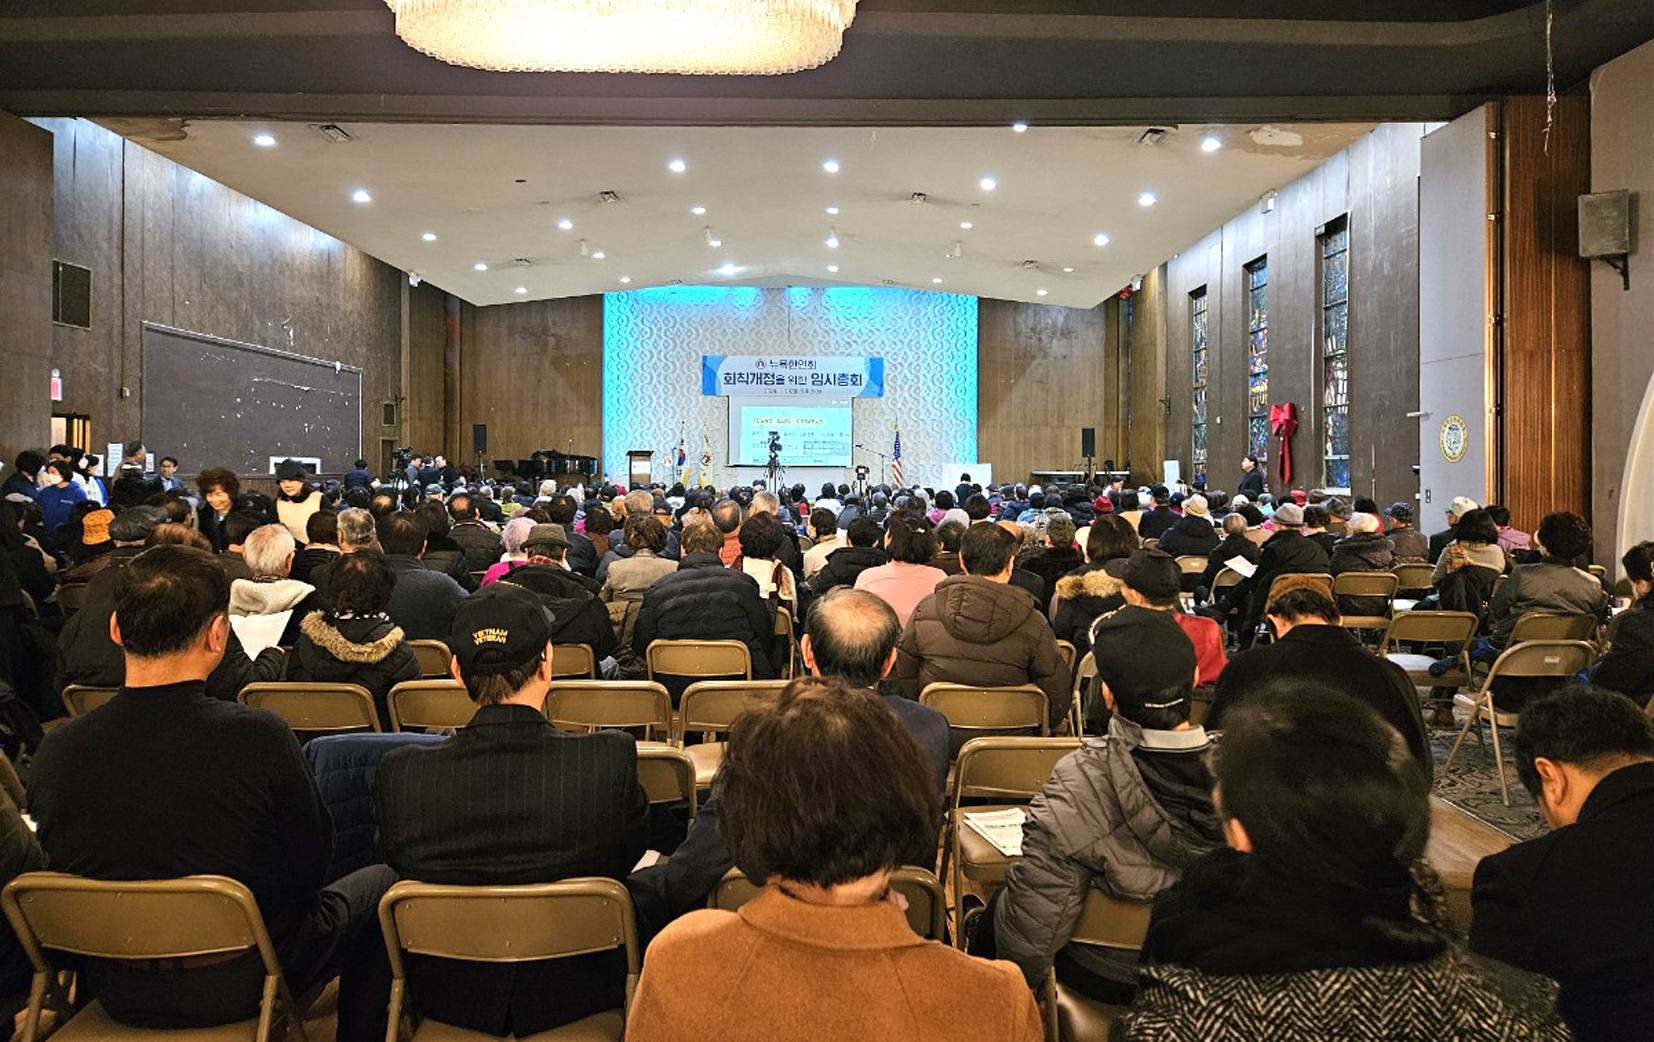 뉴욕한인회는 28일 500여 명의 한인동포들이 참석한 가운데 임시총회를 열고 미래 발전적인 내용으로 회칙을 개정했다.